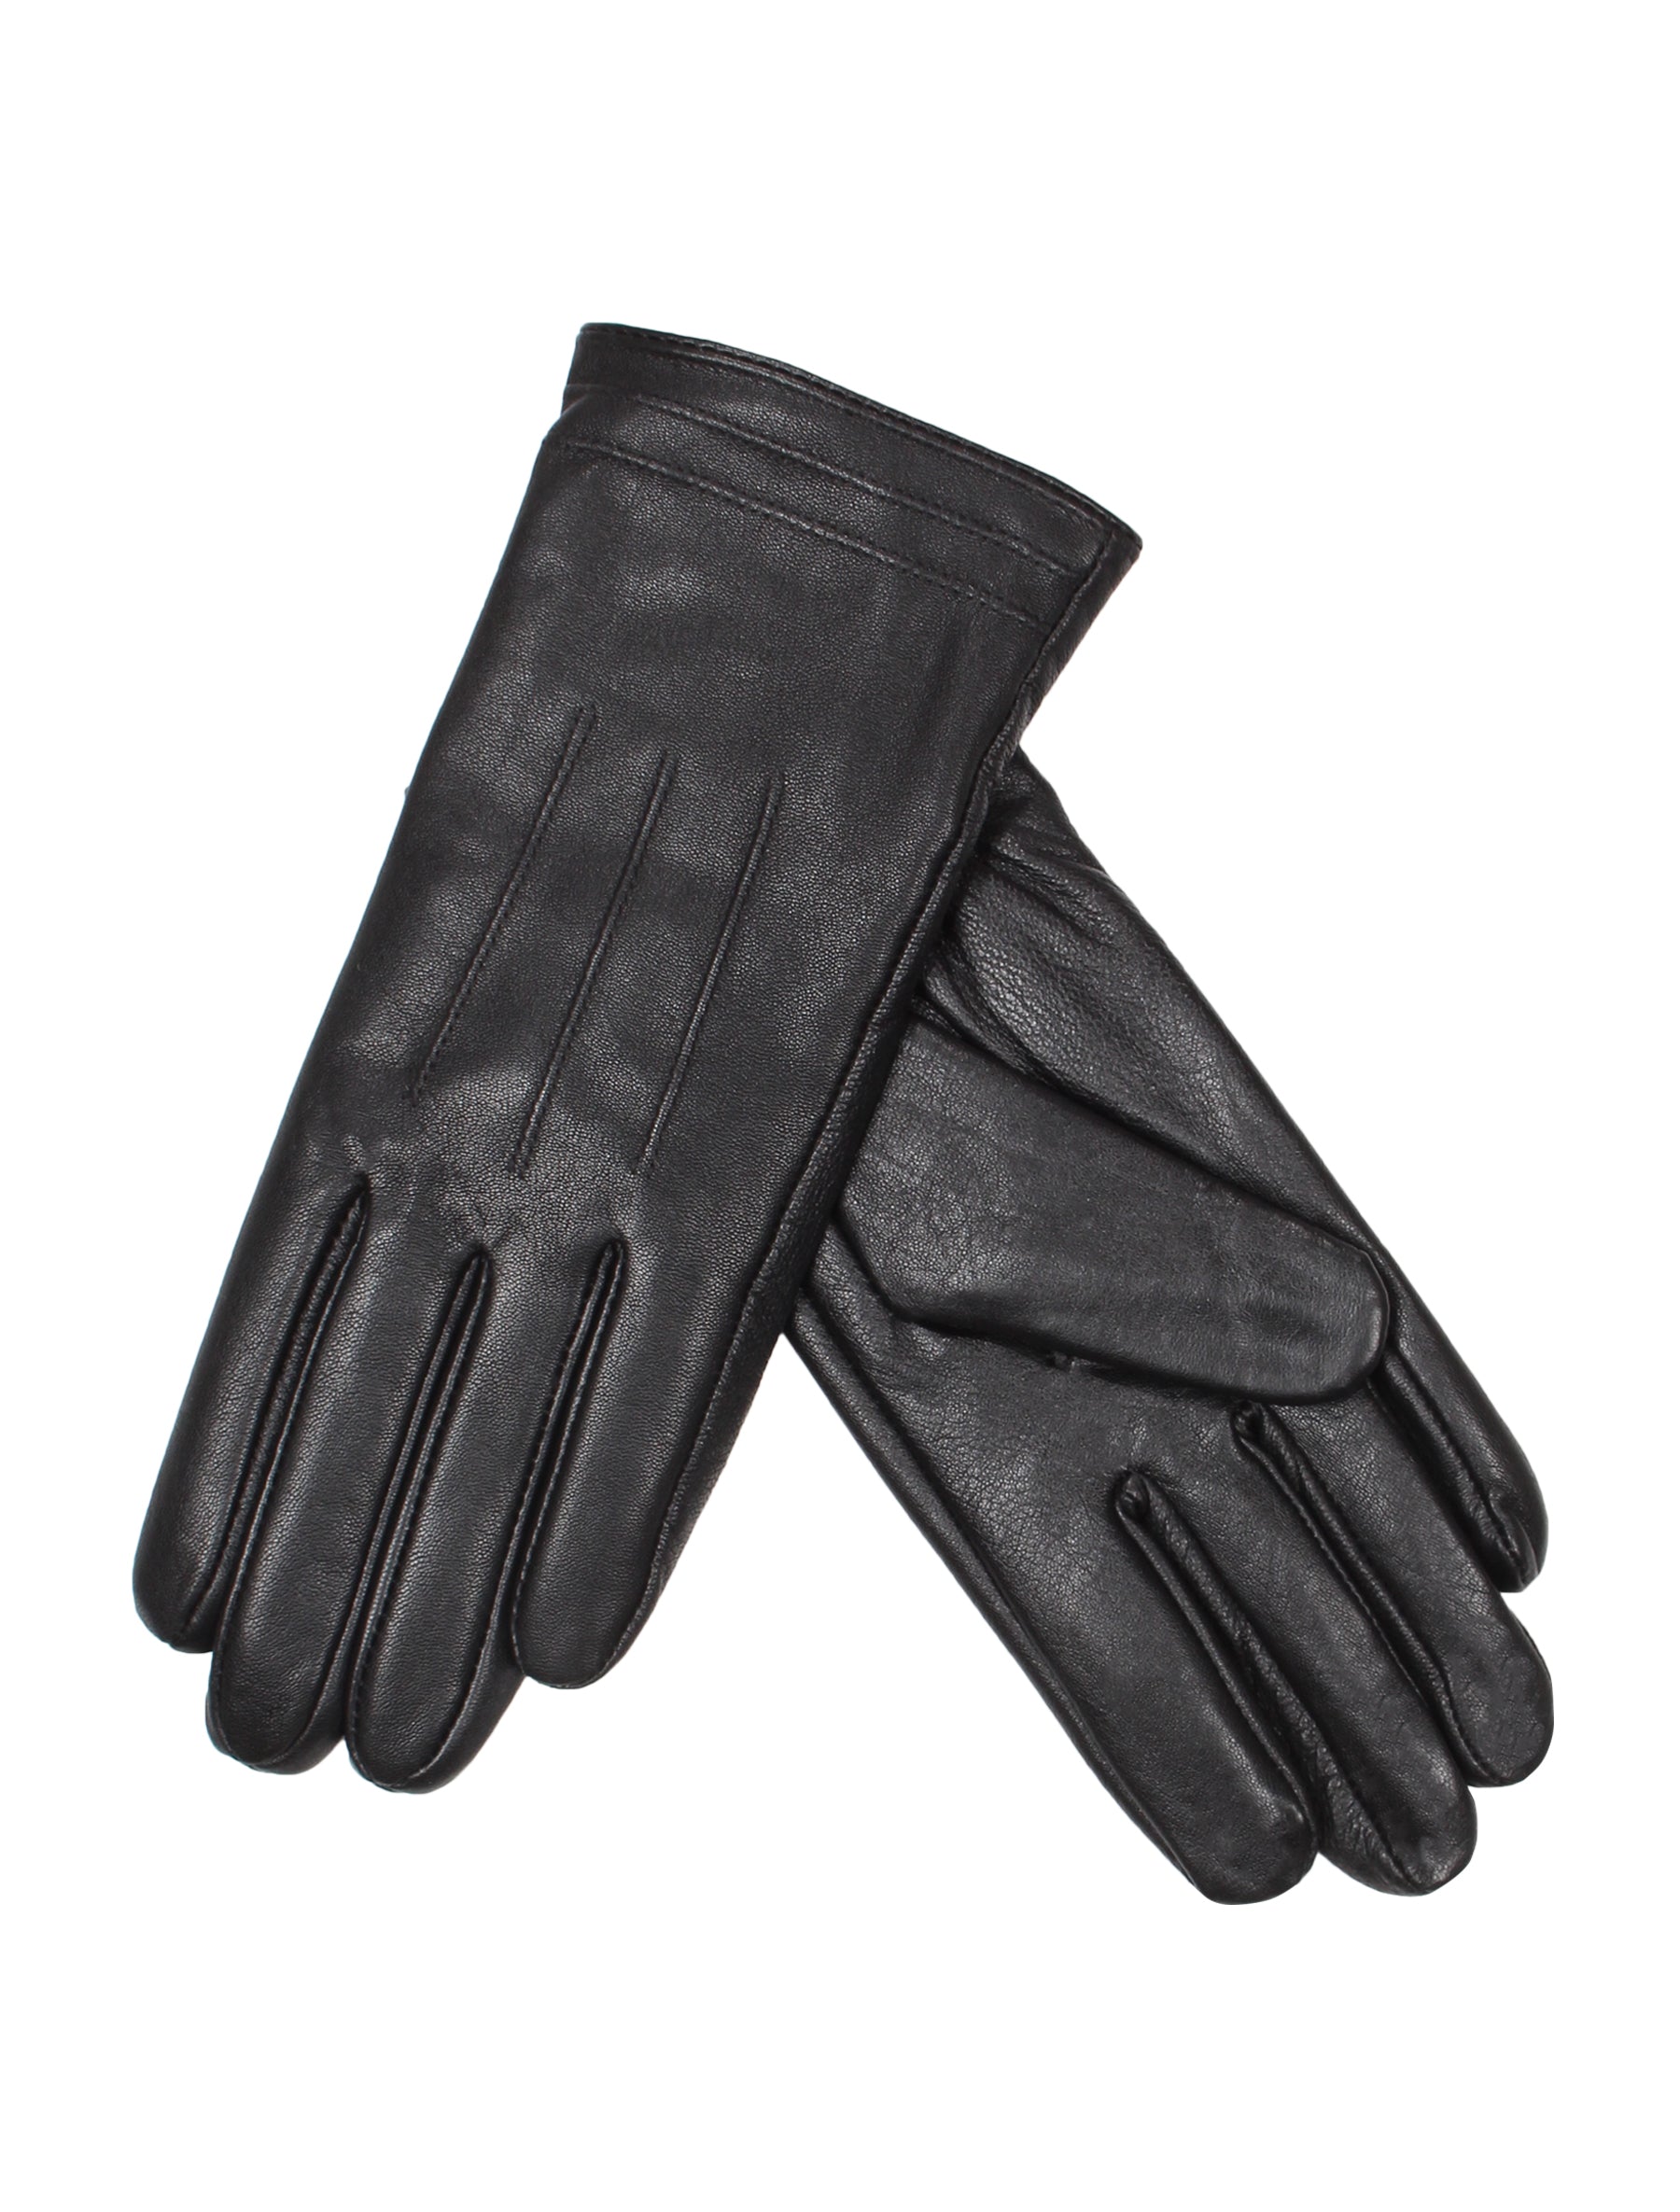 Damen Lederhandschuh mit Naht von Weikert - 3507 in schwarz